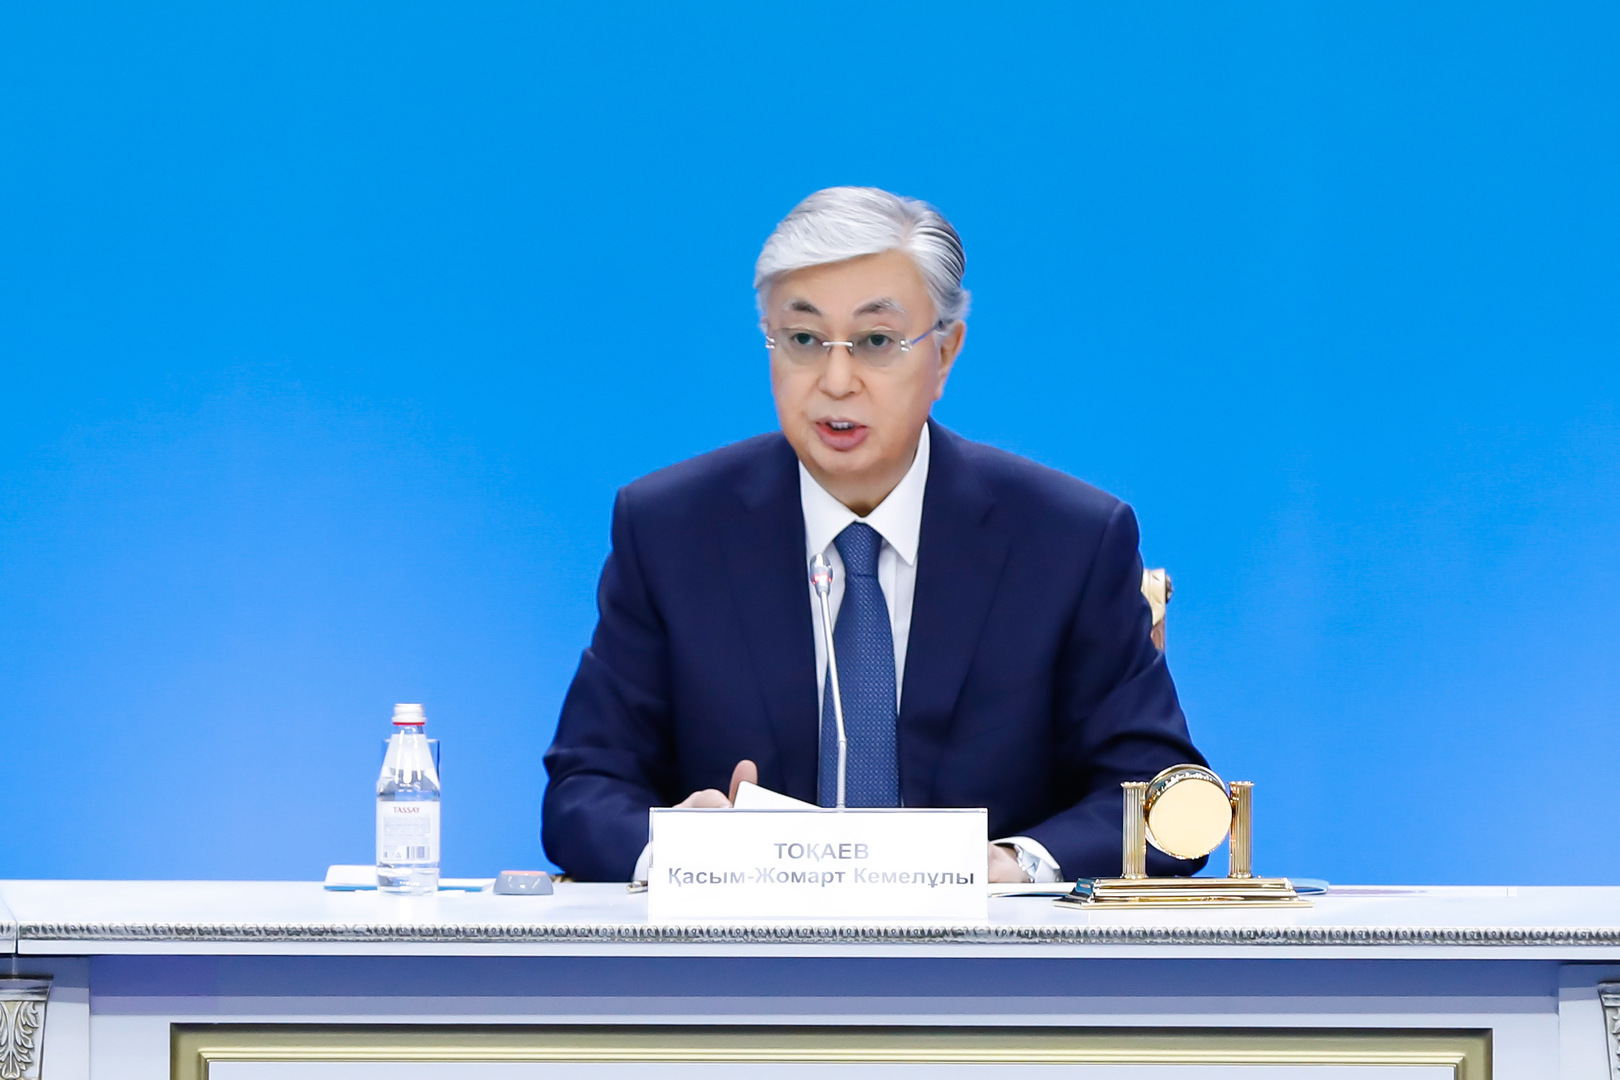 كازاخستان: انتخابات مبكرة وولاية رئاسية واحدة لـ 7 سنوات غير قابلة للتجديد